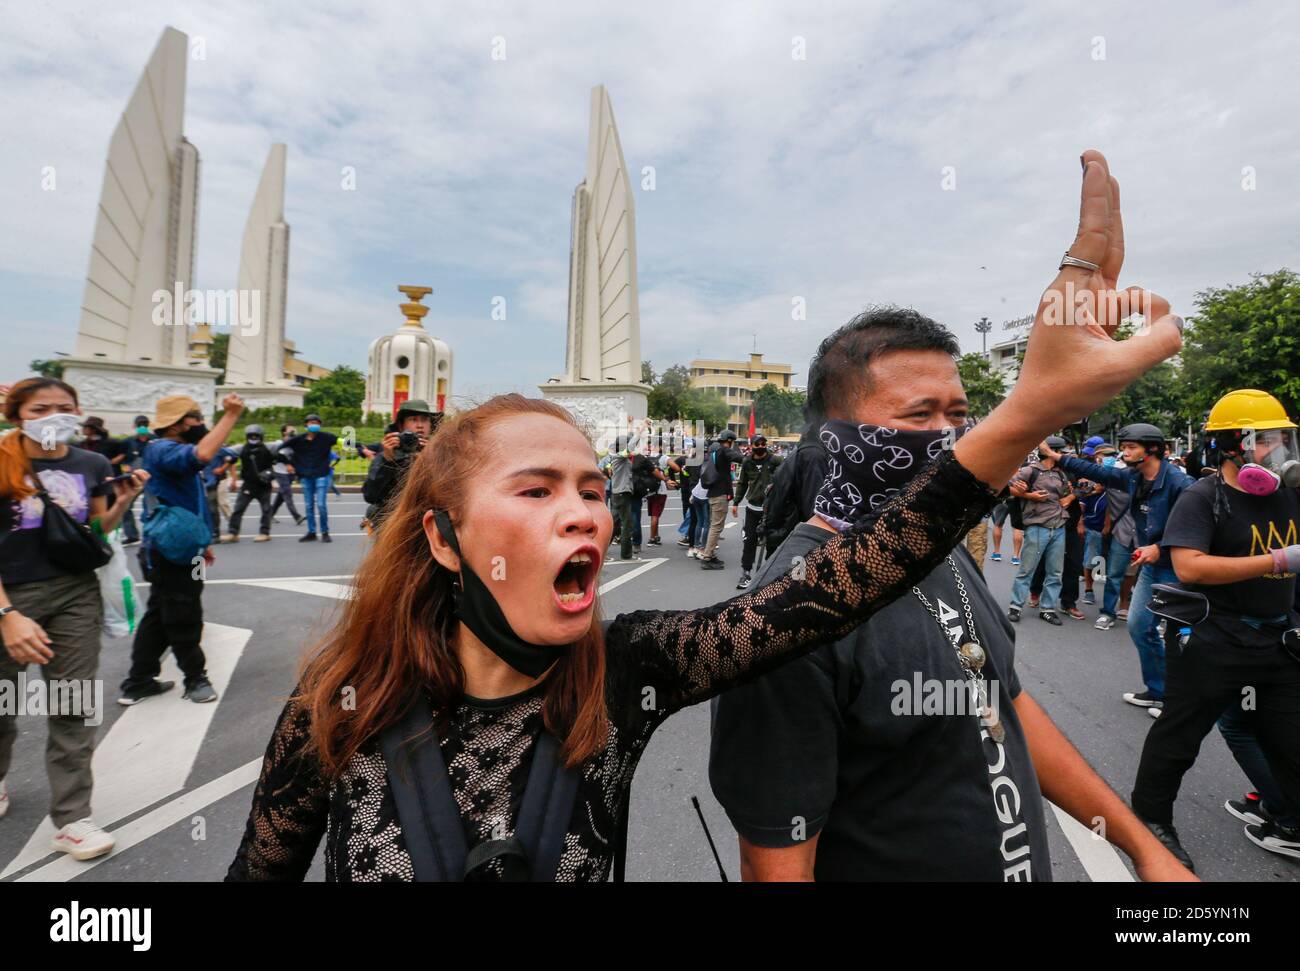 Les manifestants anti-gouvernement tiennent les trois doigts pour saluer la manifestation.des milliers de manifestants anti-gouvernement thaïlandais ont défilé vers la Maison du gouvernement à Bangkok pour demander la démission du Premier ministre thaïlandais, Prayuth Chan-ocha, et des réformes de la monarchie. Banque D'Images